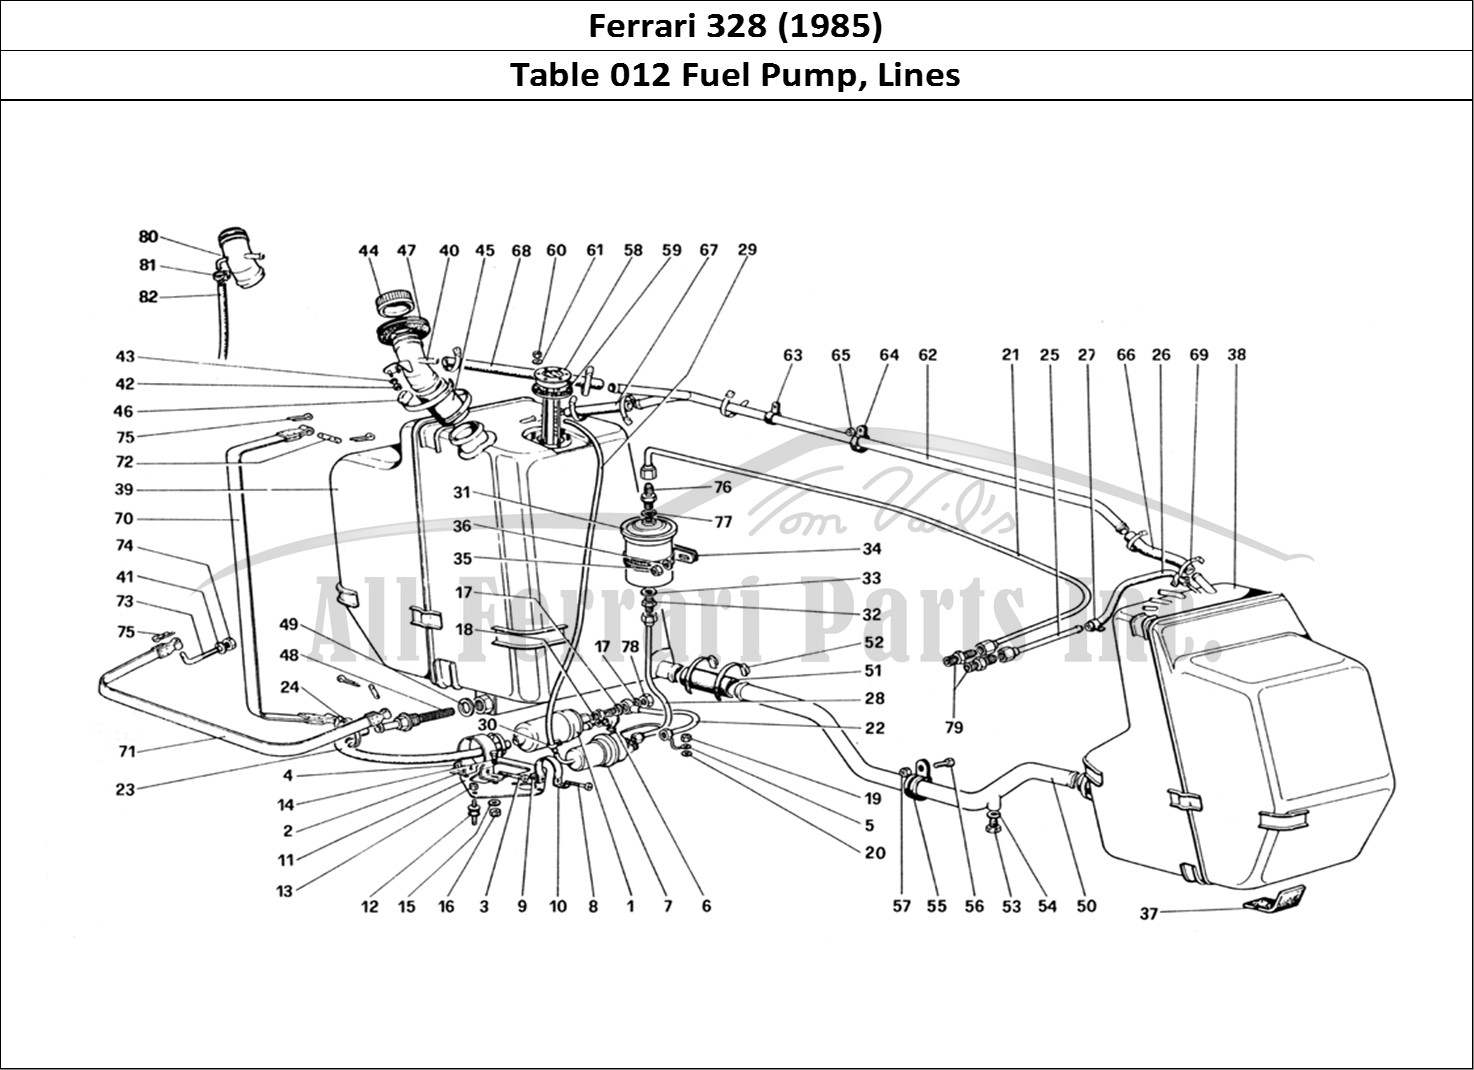 Ferrari Parts Ferrari 328 (1985) Page 012 Fuel Pump and Pipes